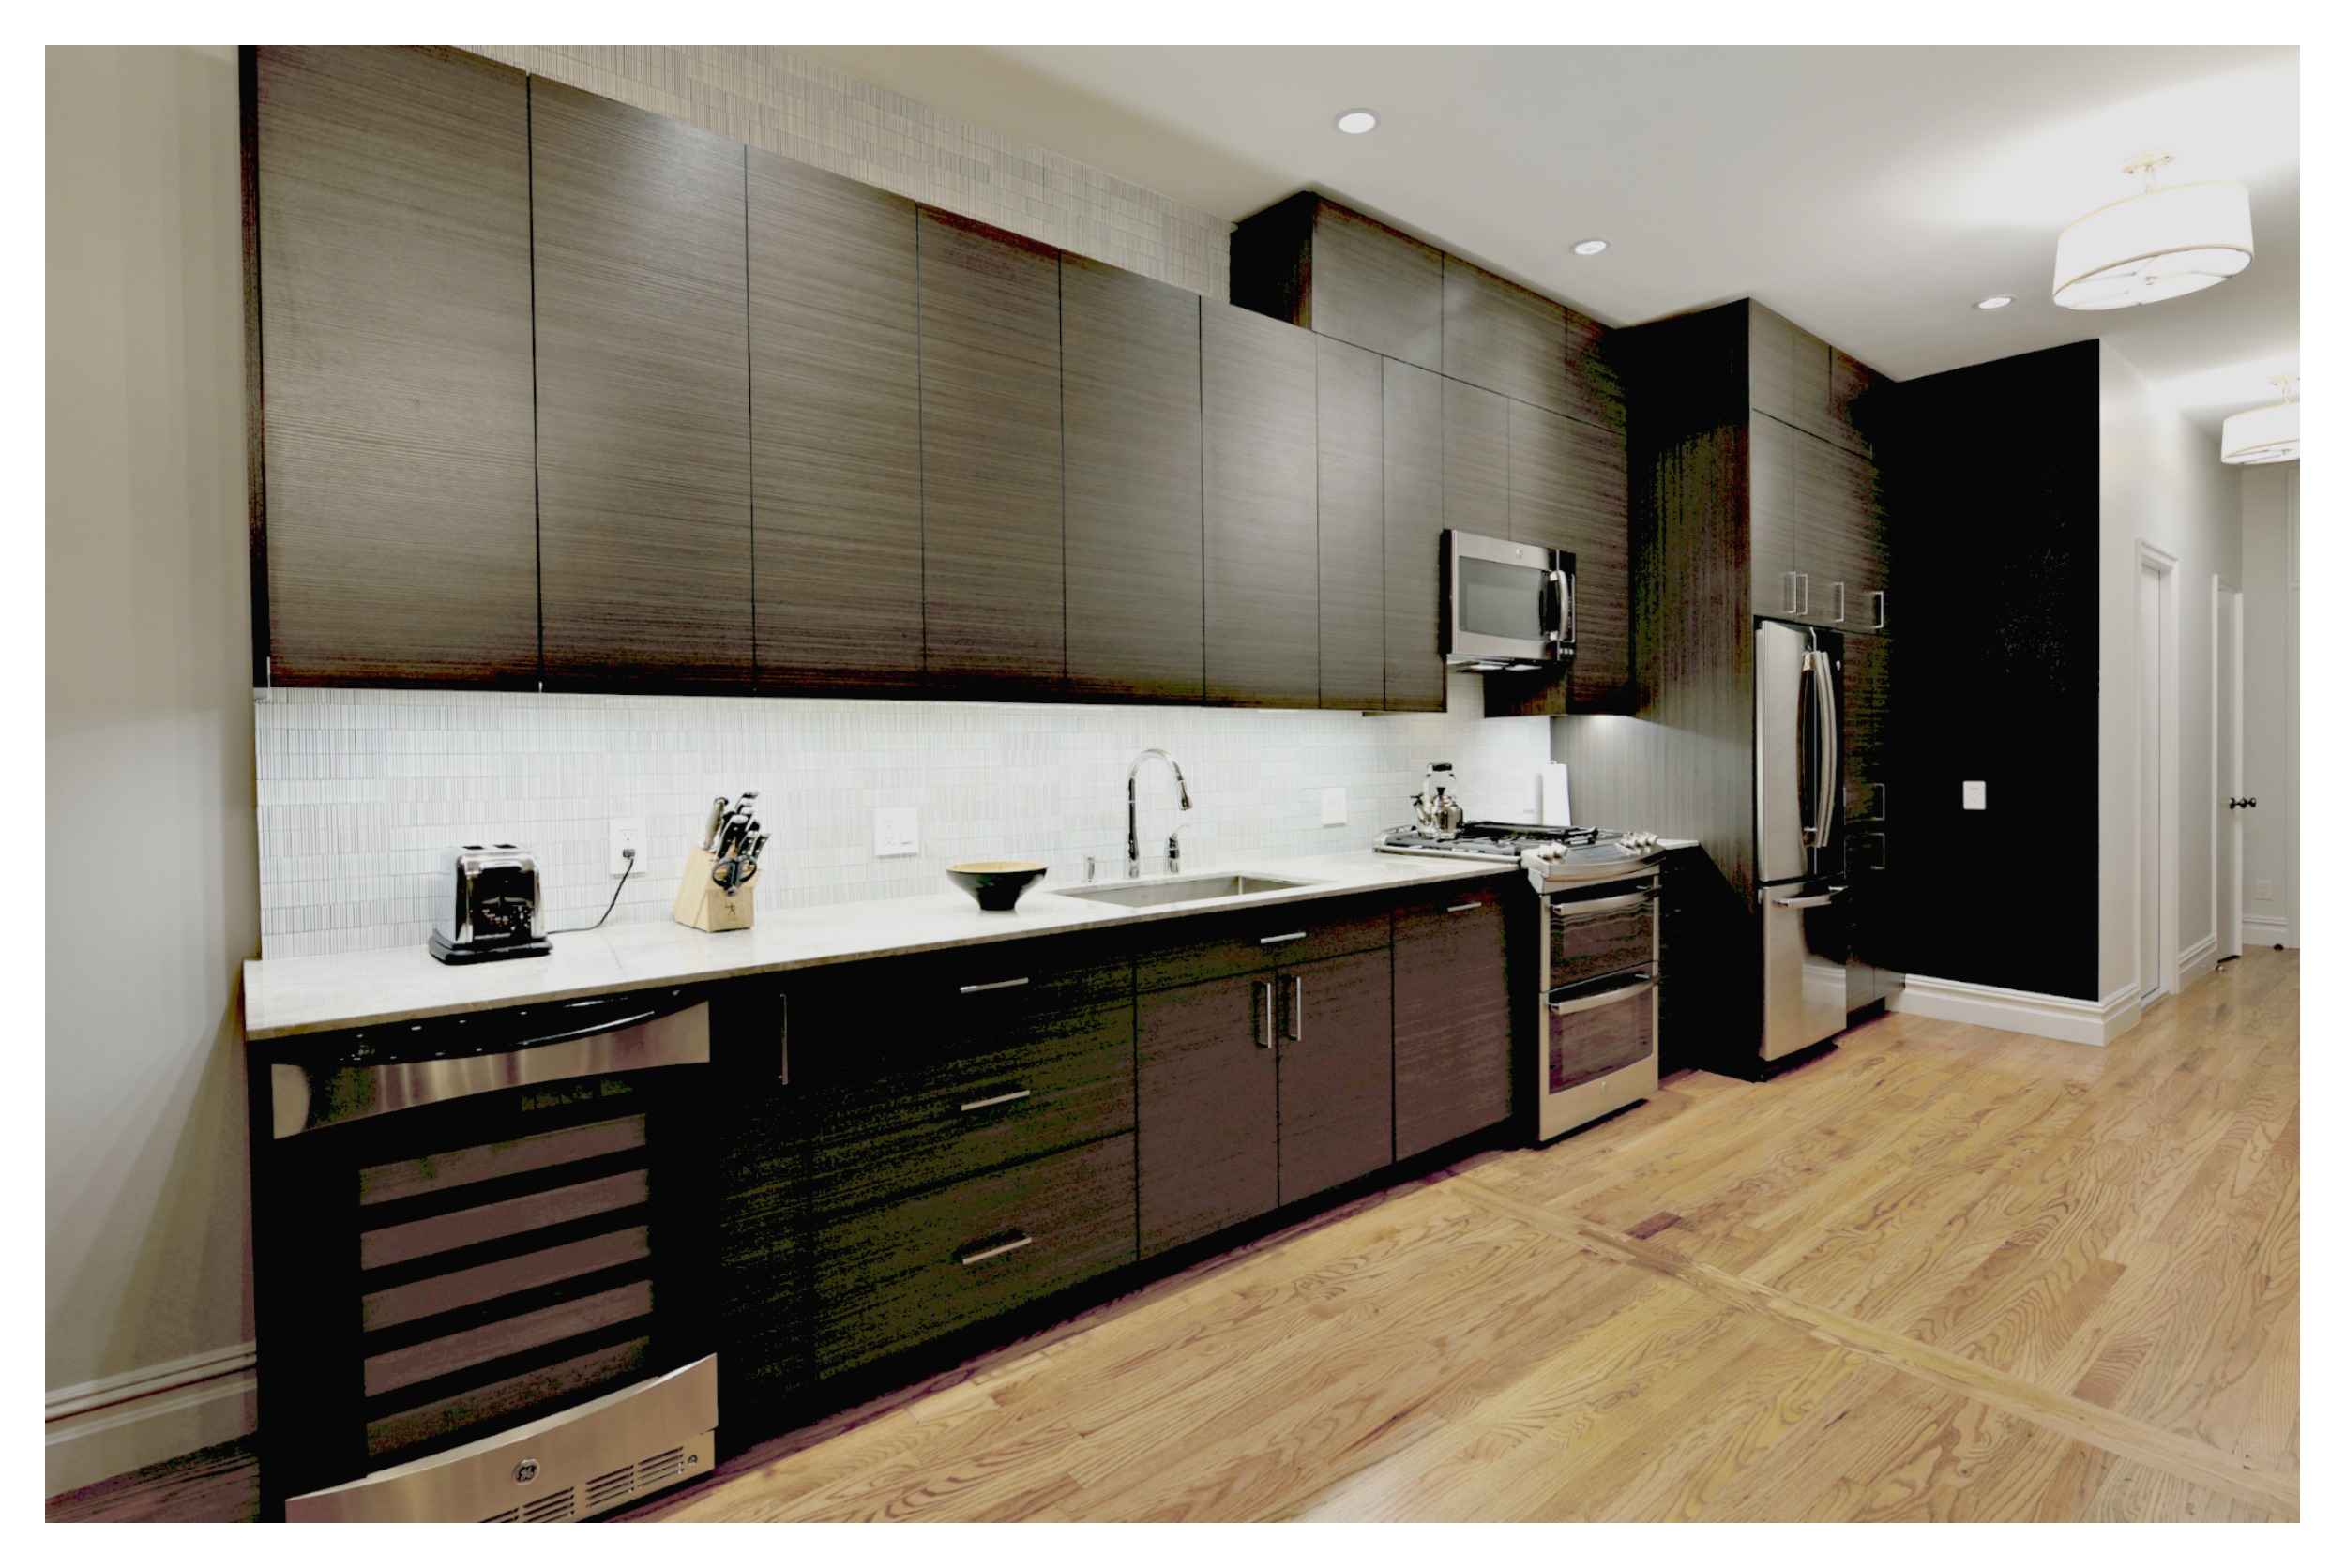 greenpoint-brooklyn-kitchen.jpg